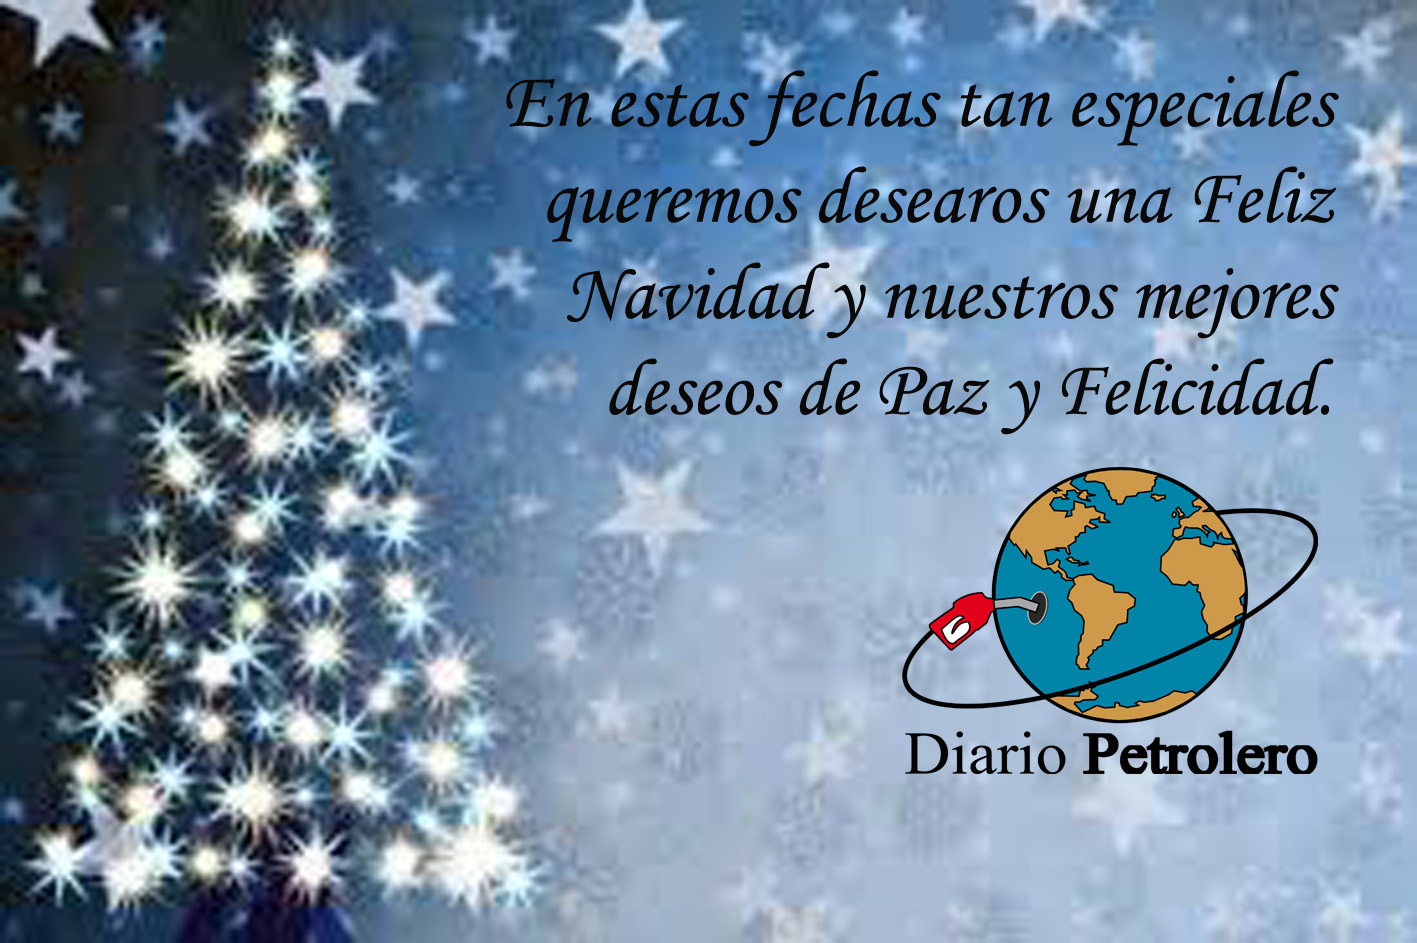 Diario Petrolero les desea unas felices fiestas y prospero año 2016 !